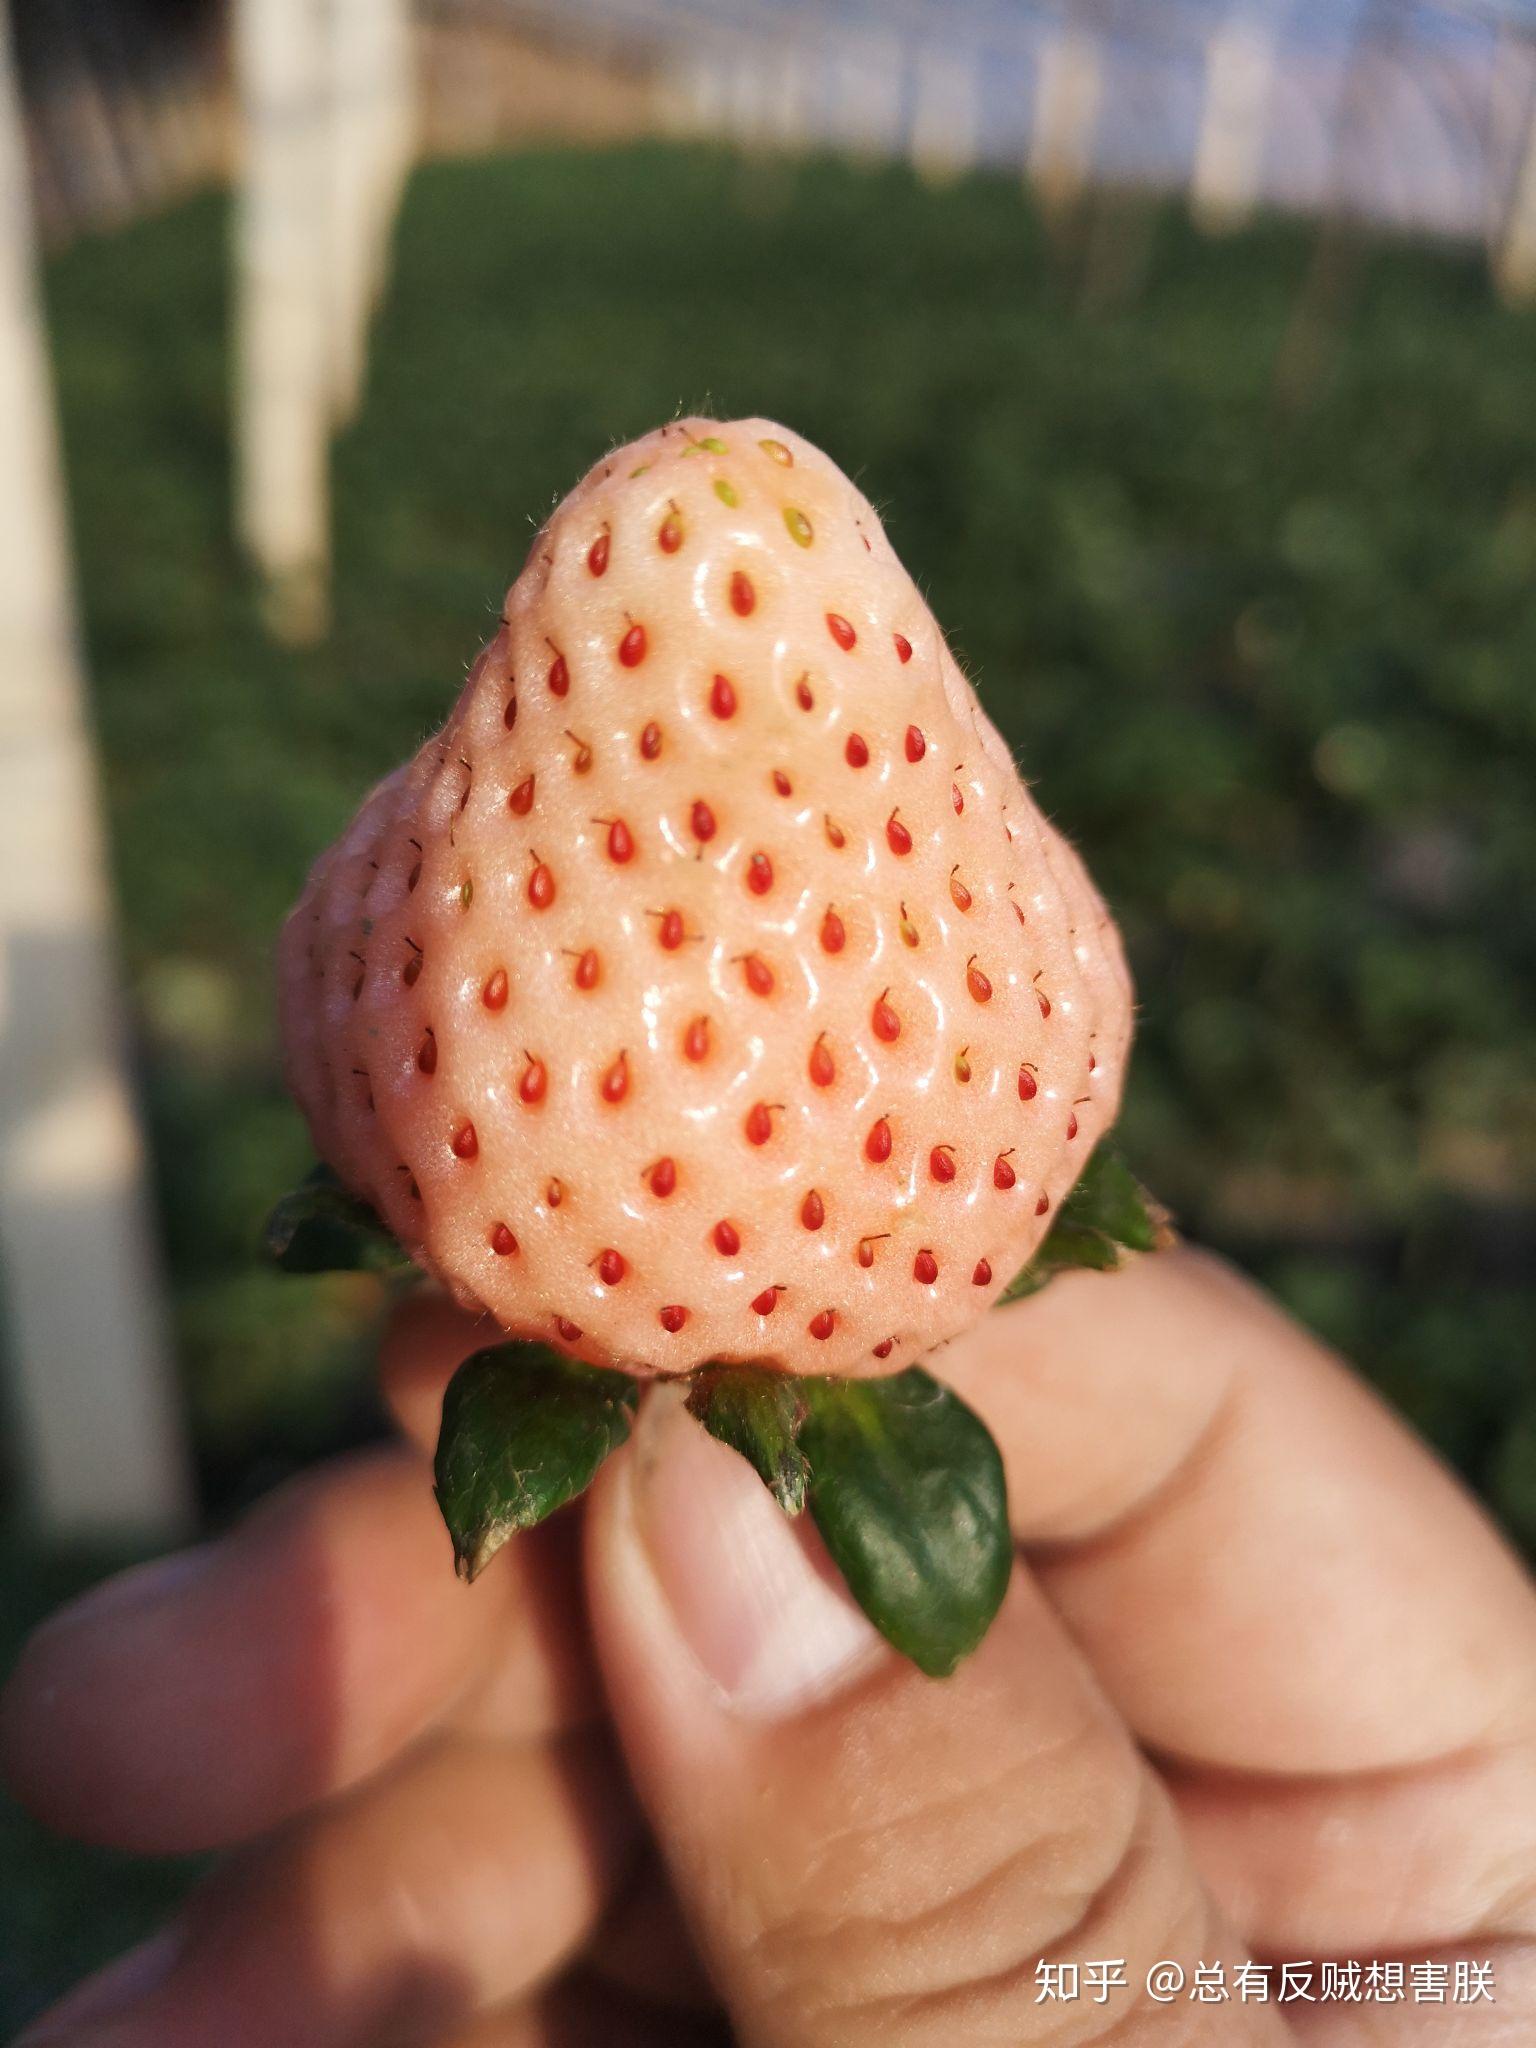 12月中下旬价格为春节前最低 盒马发布“草莓自由”趋势图 - 新智派